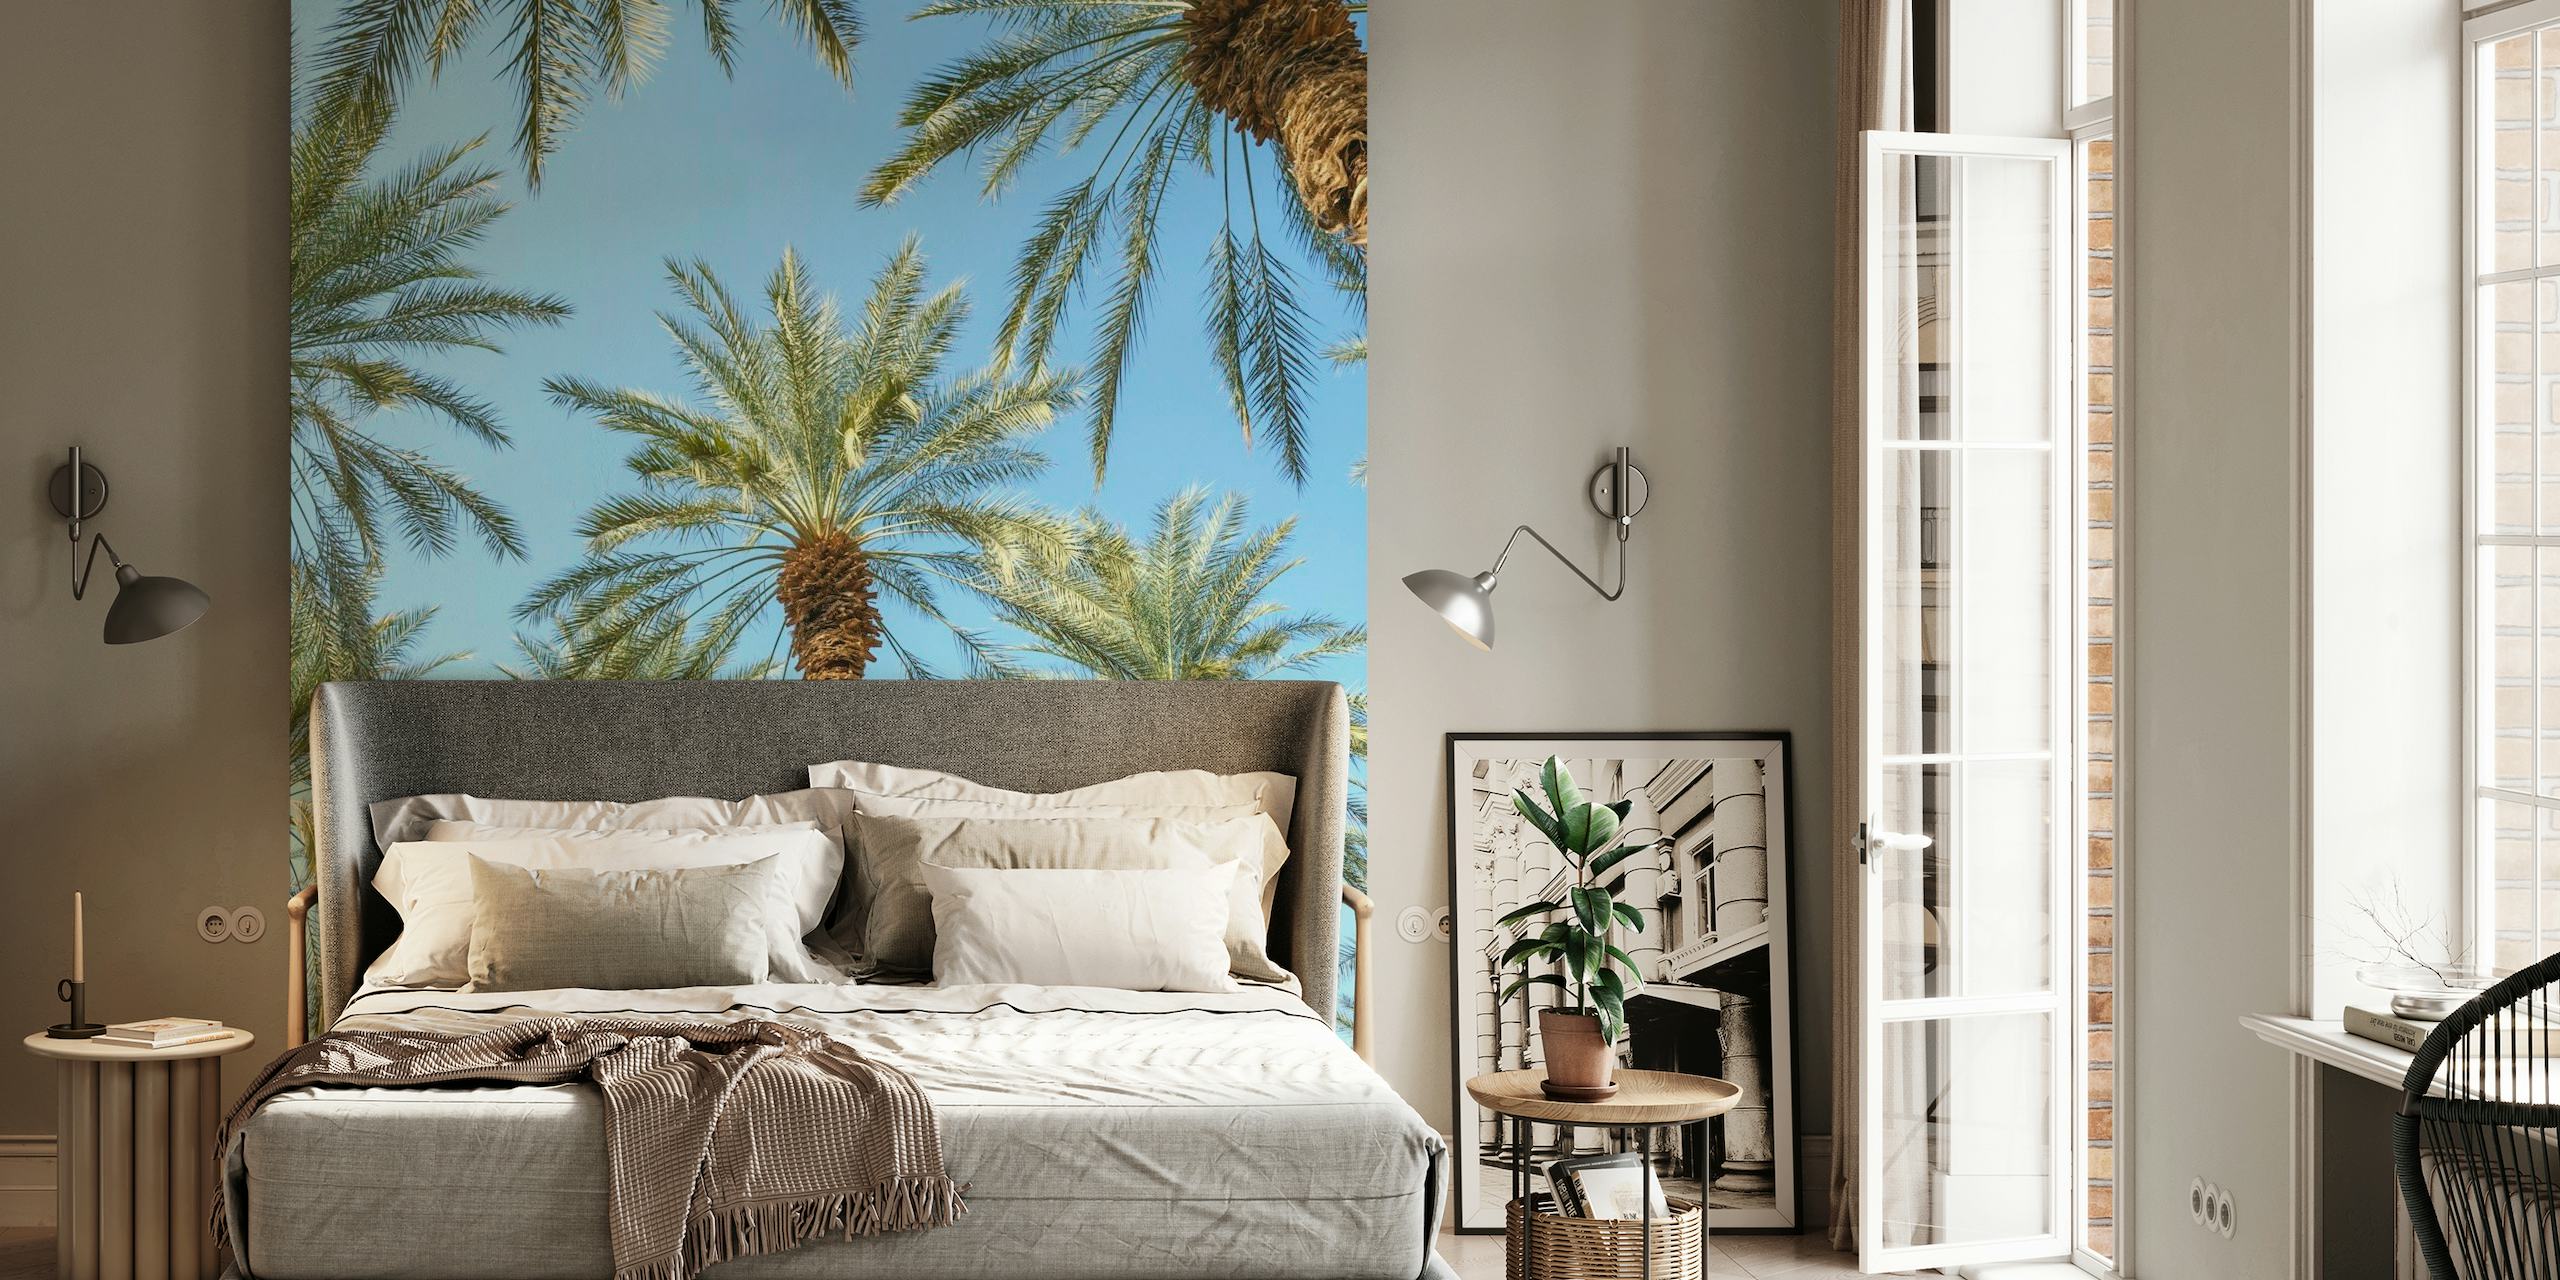 Wandbild mit tropischen Palmen für eine ruhige Wohnatmosphäre.